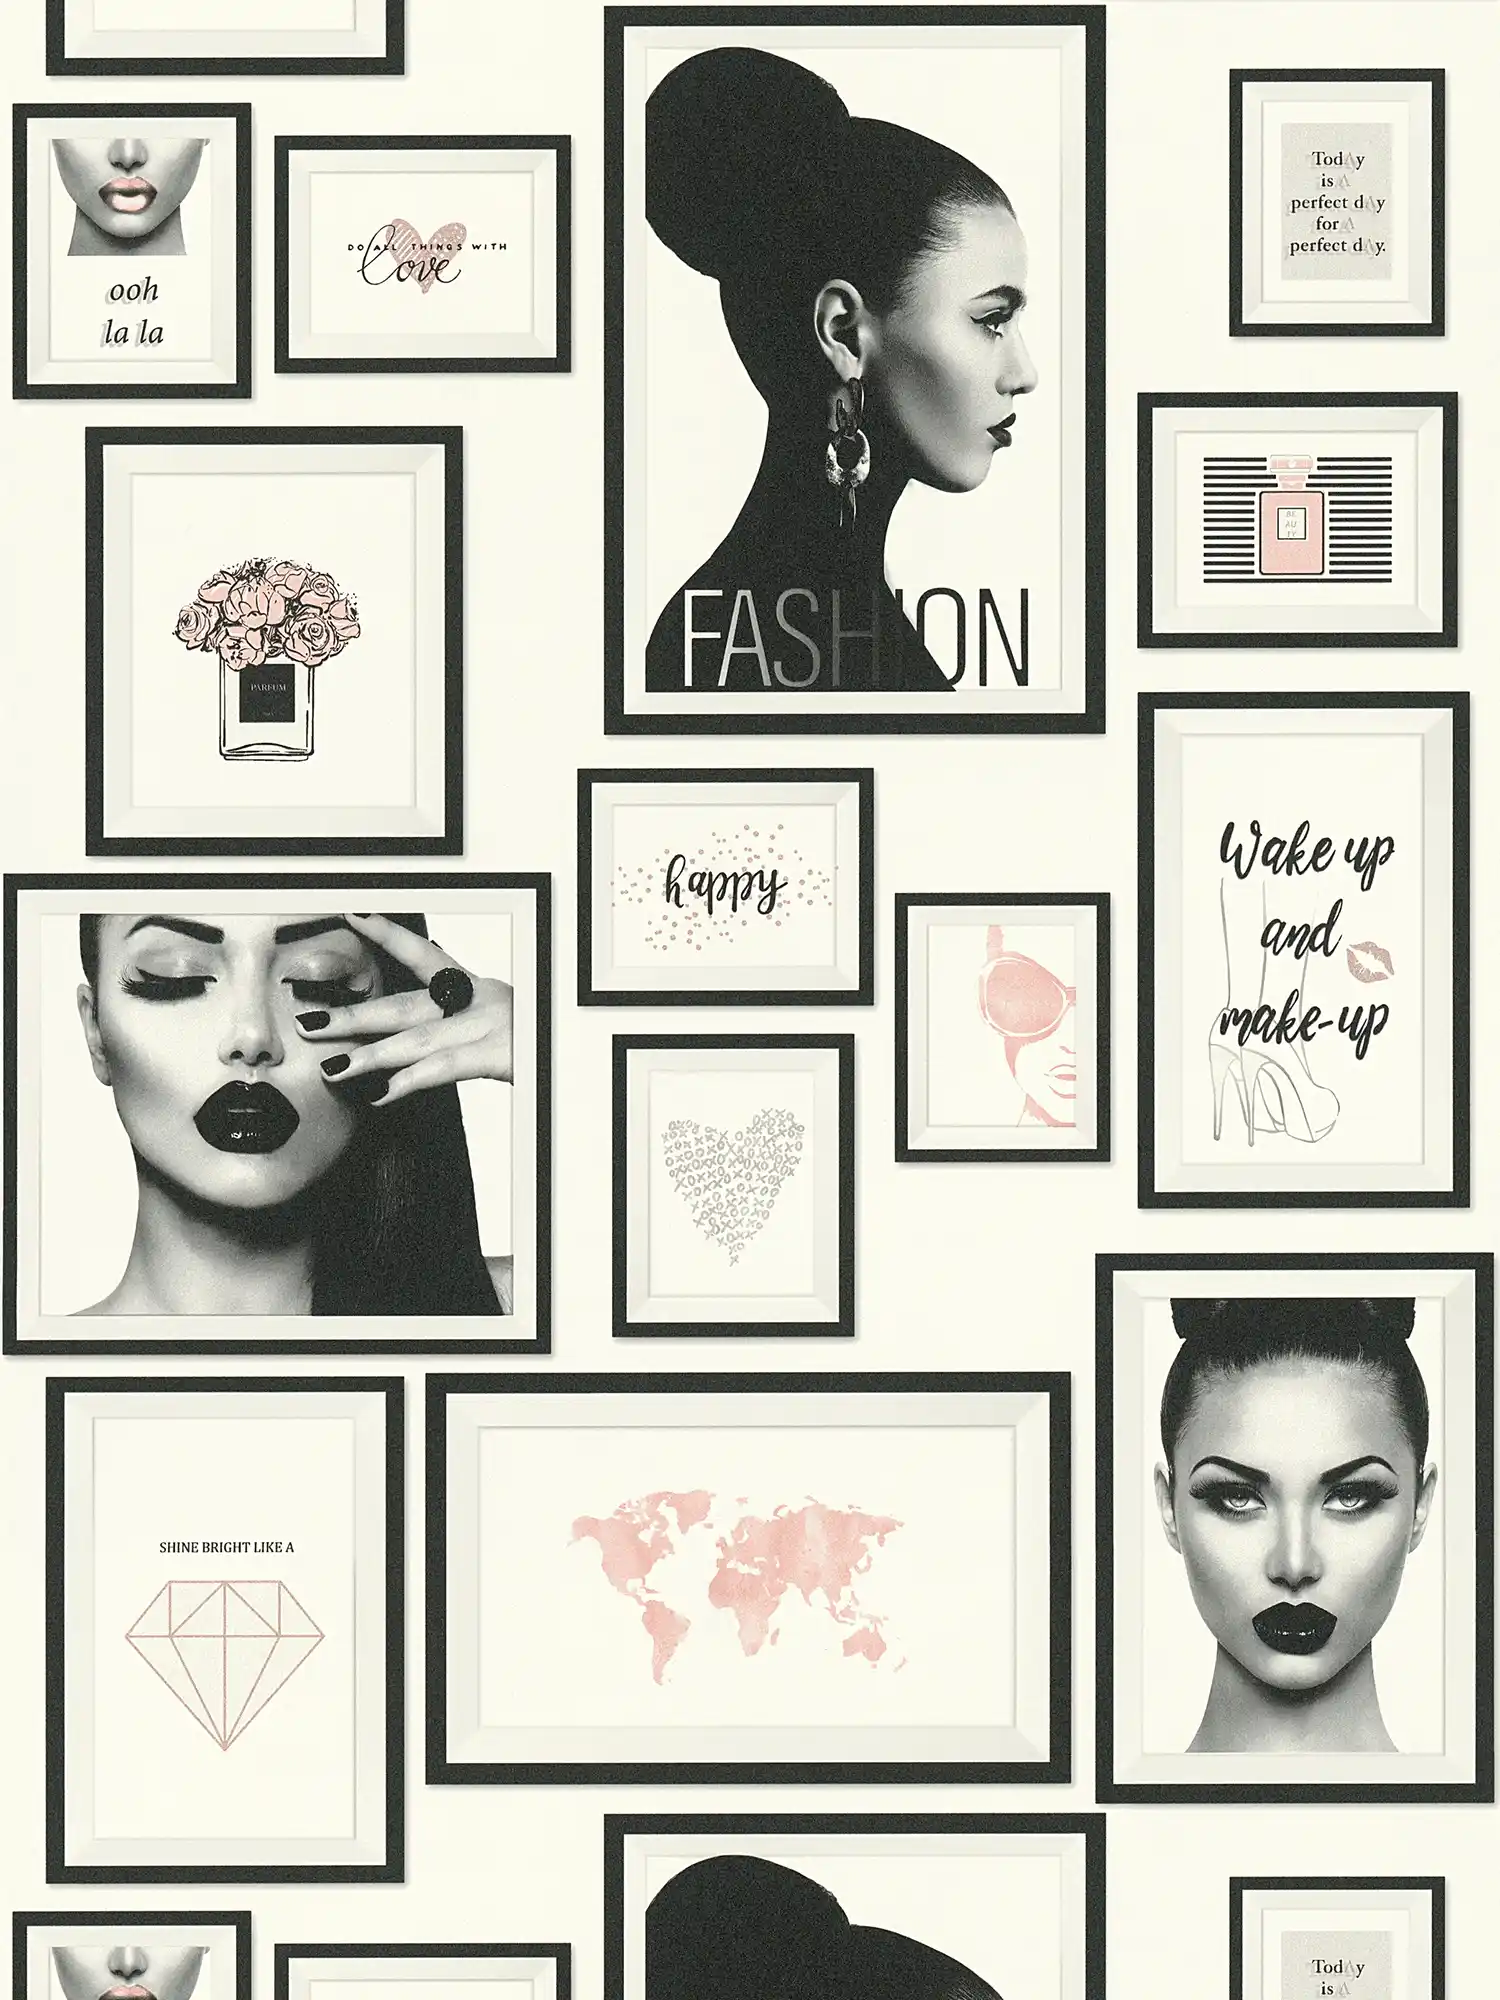 Papier peint Fashion Design avec décorations murales - noir, blanc, gris, rose
